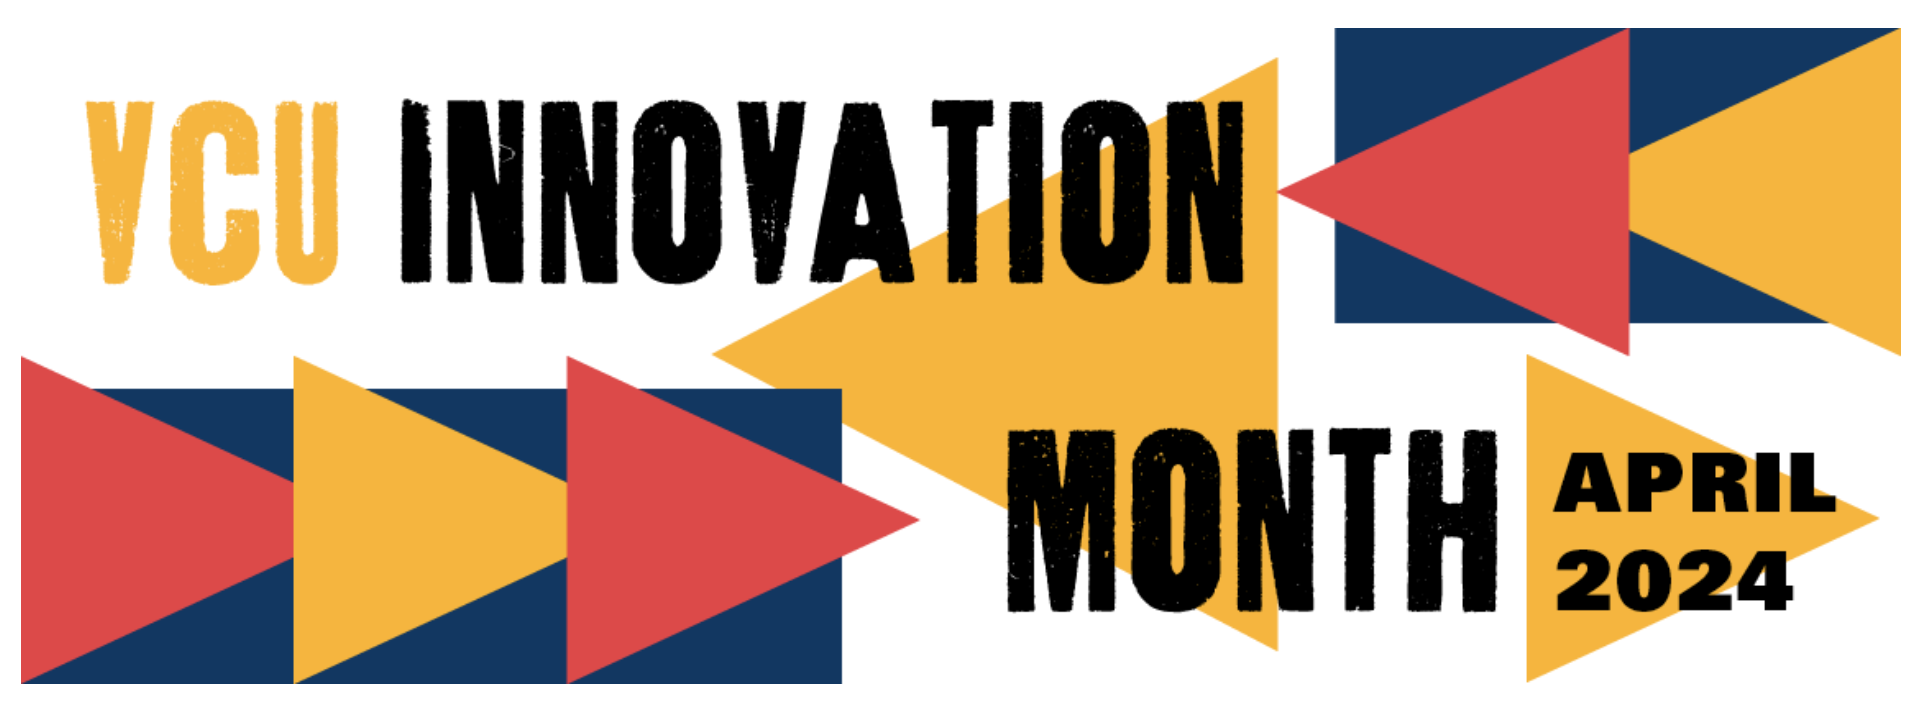 VCU Innovation Month 2024